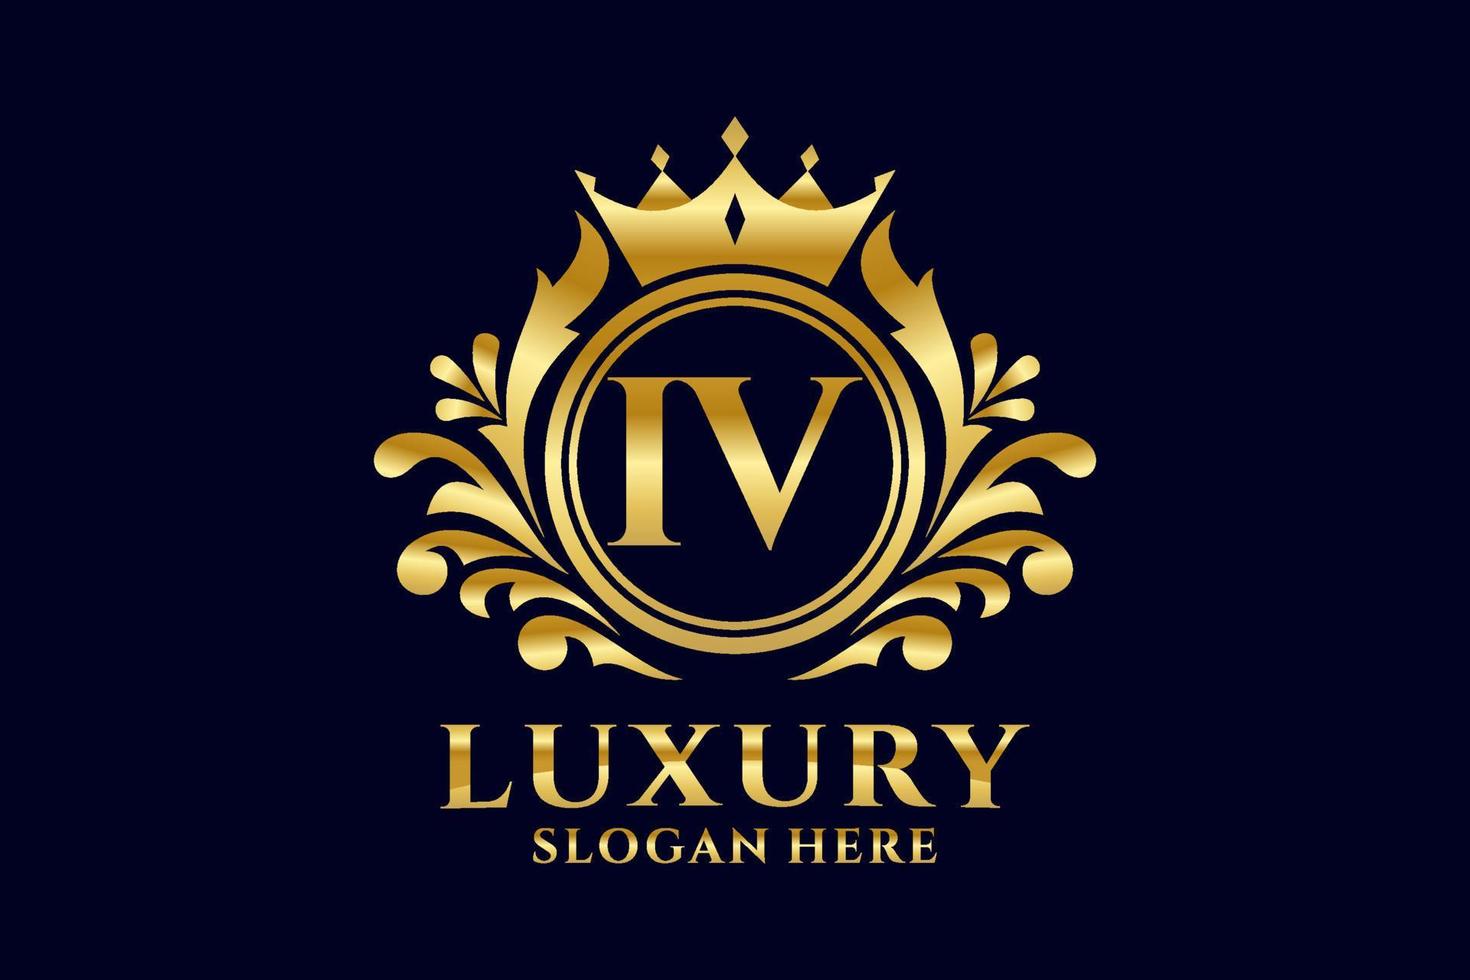 königliche luxus-logo-vorlage mit initialem iv-buchstaben in vektorgrafiken für luxuriöse branding-projekte und andere vektorillustrationen. vektor